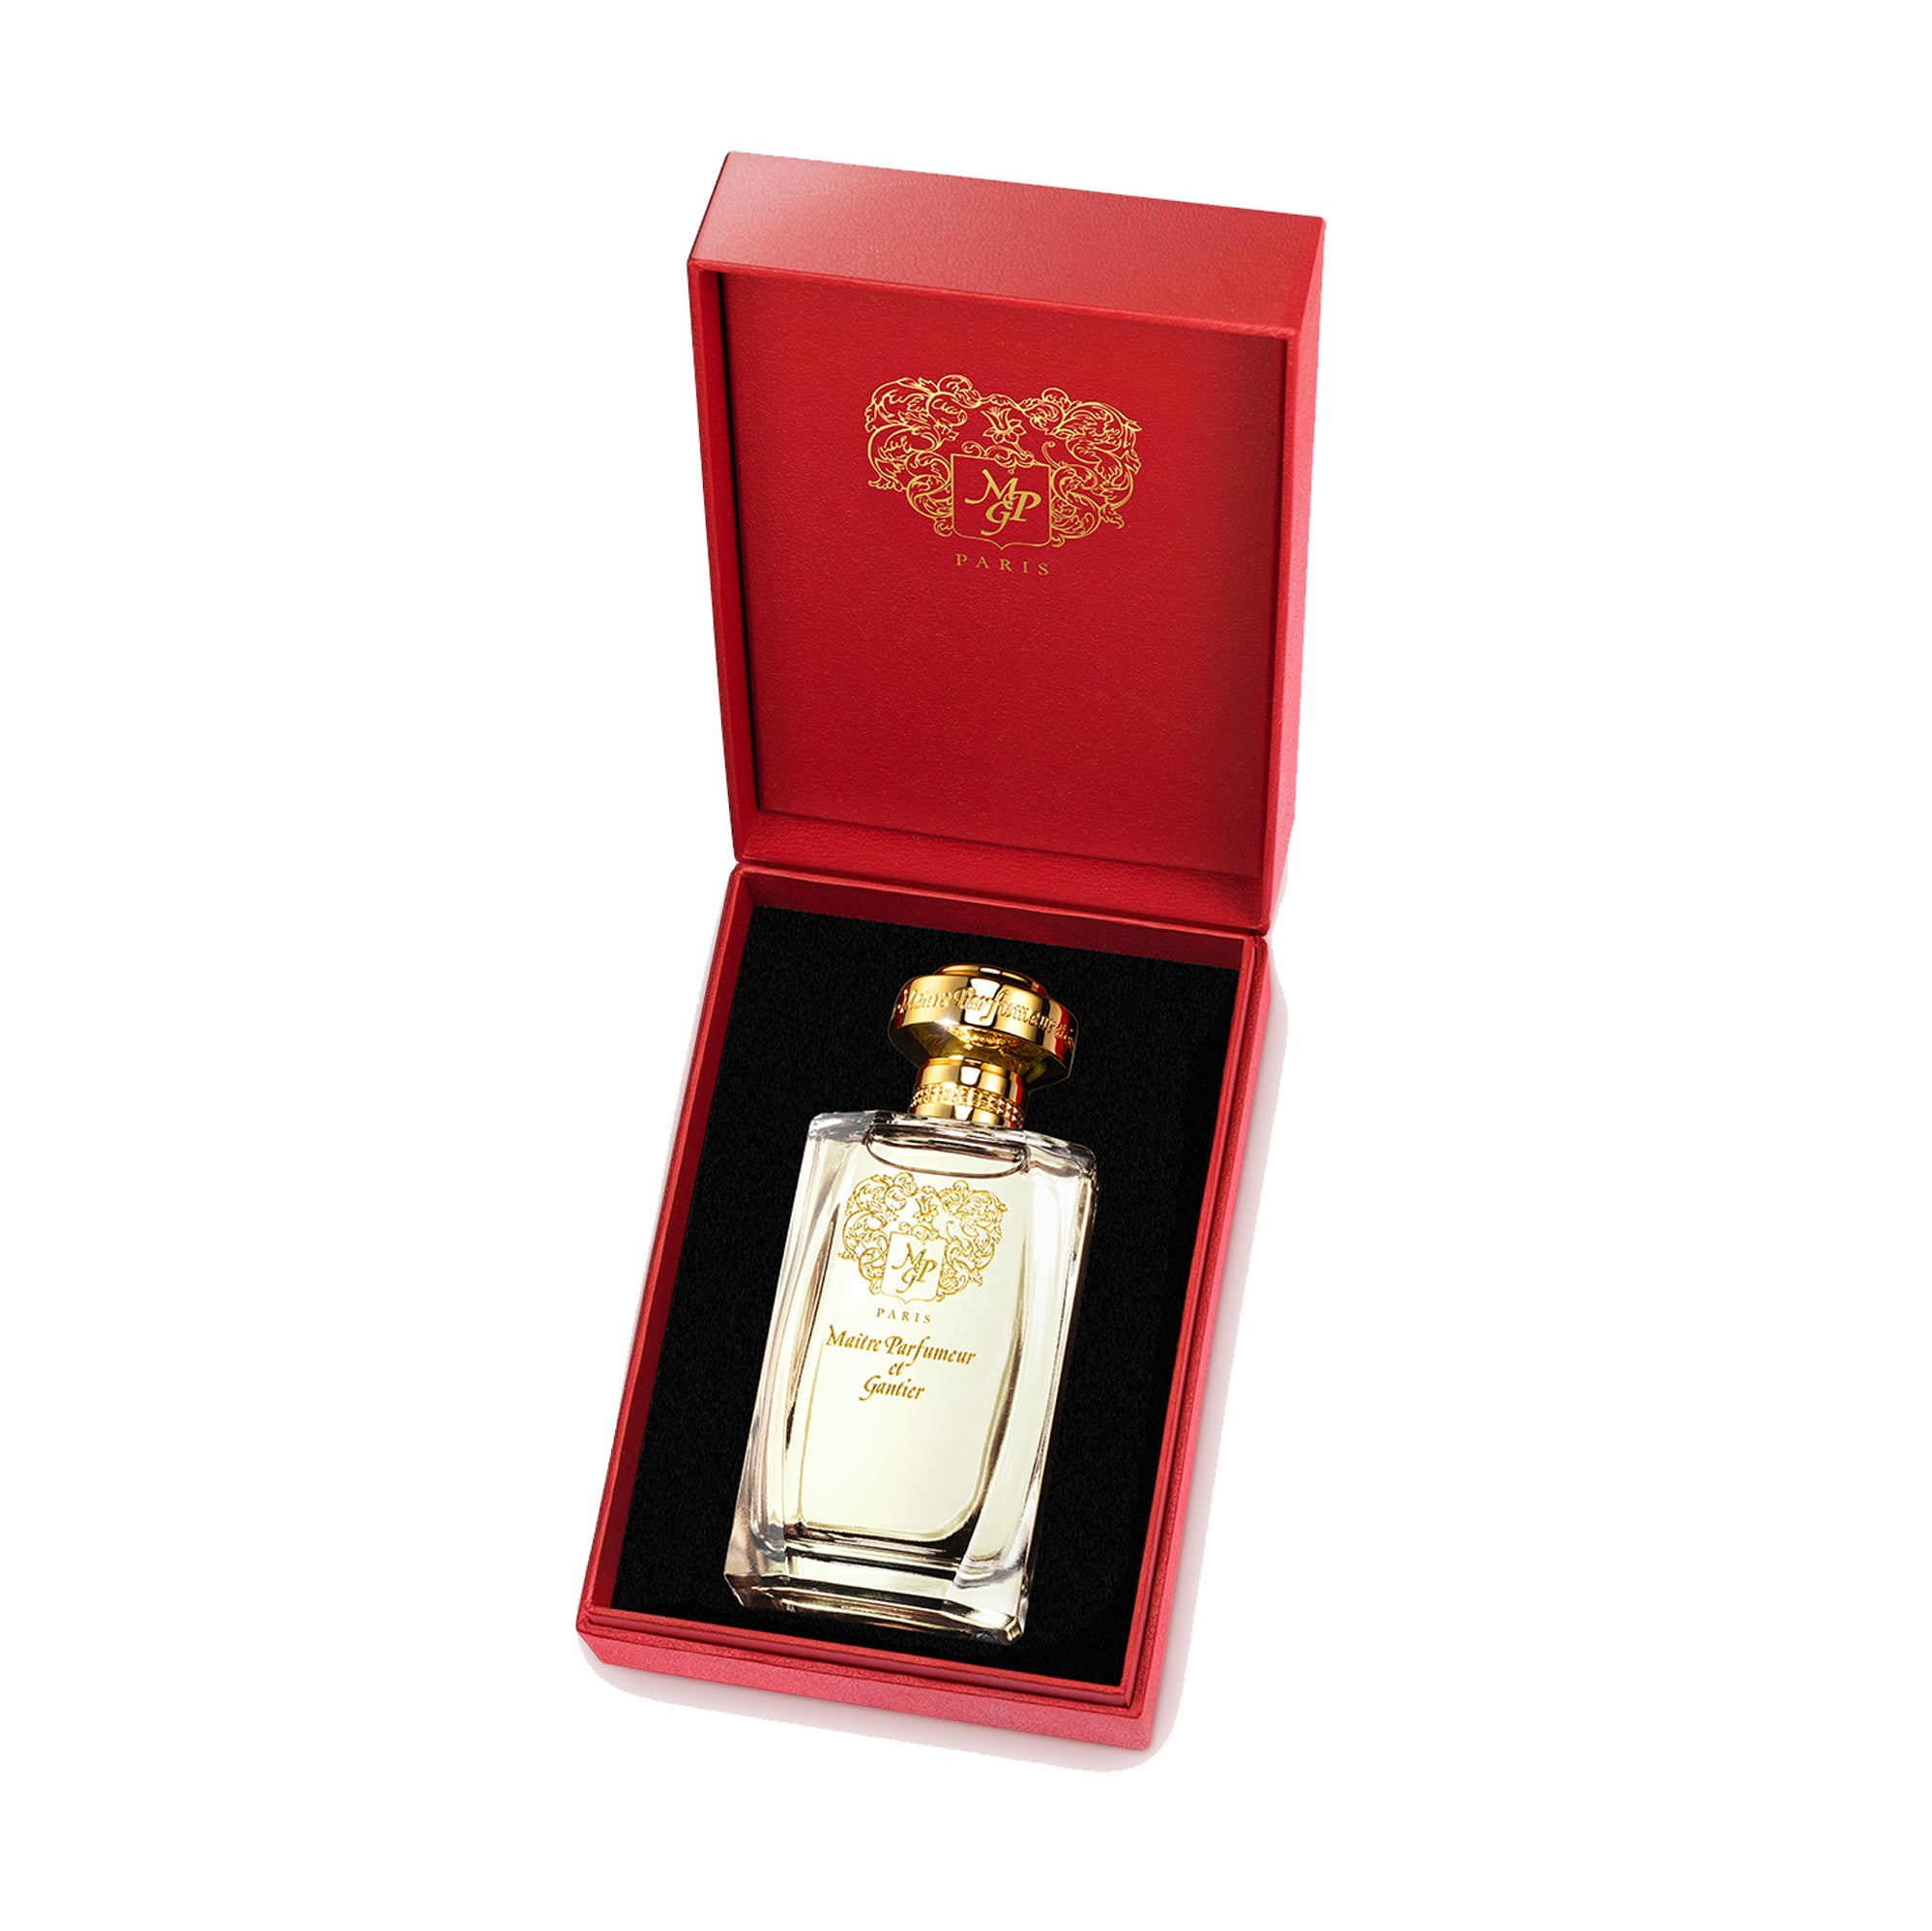 Garrigue 120ml Eau de Parfum Bottle by MAÎTRE PARFUMEUR ET GANTIER in Presentation Box